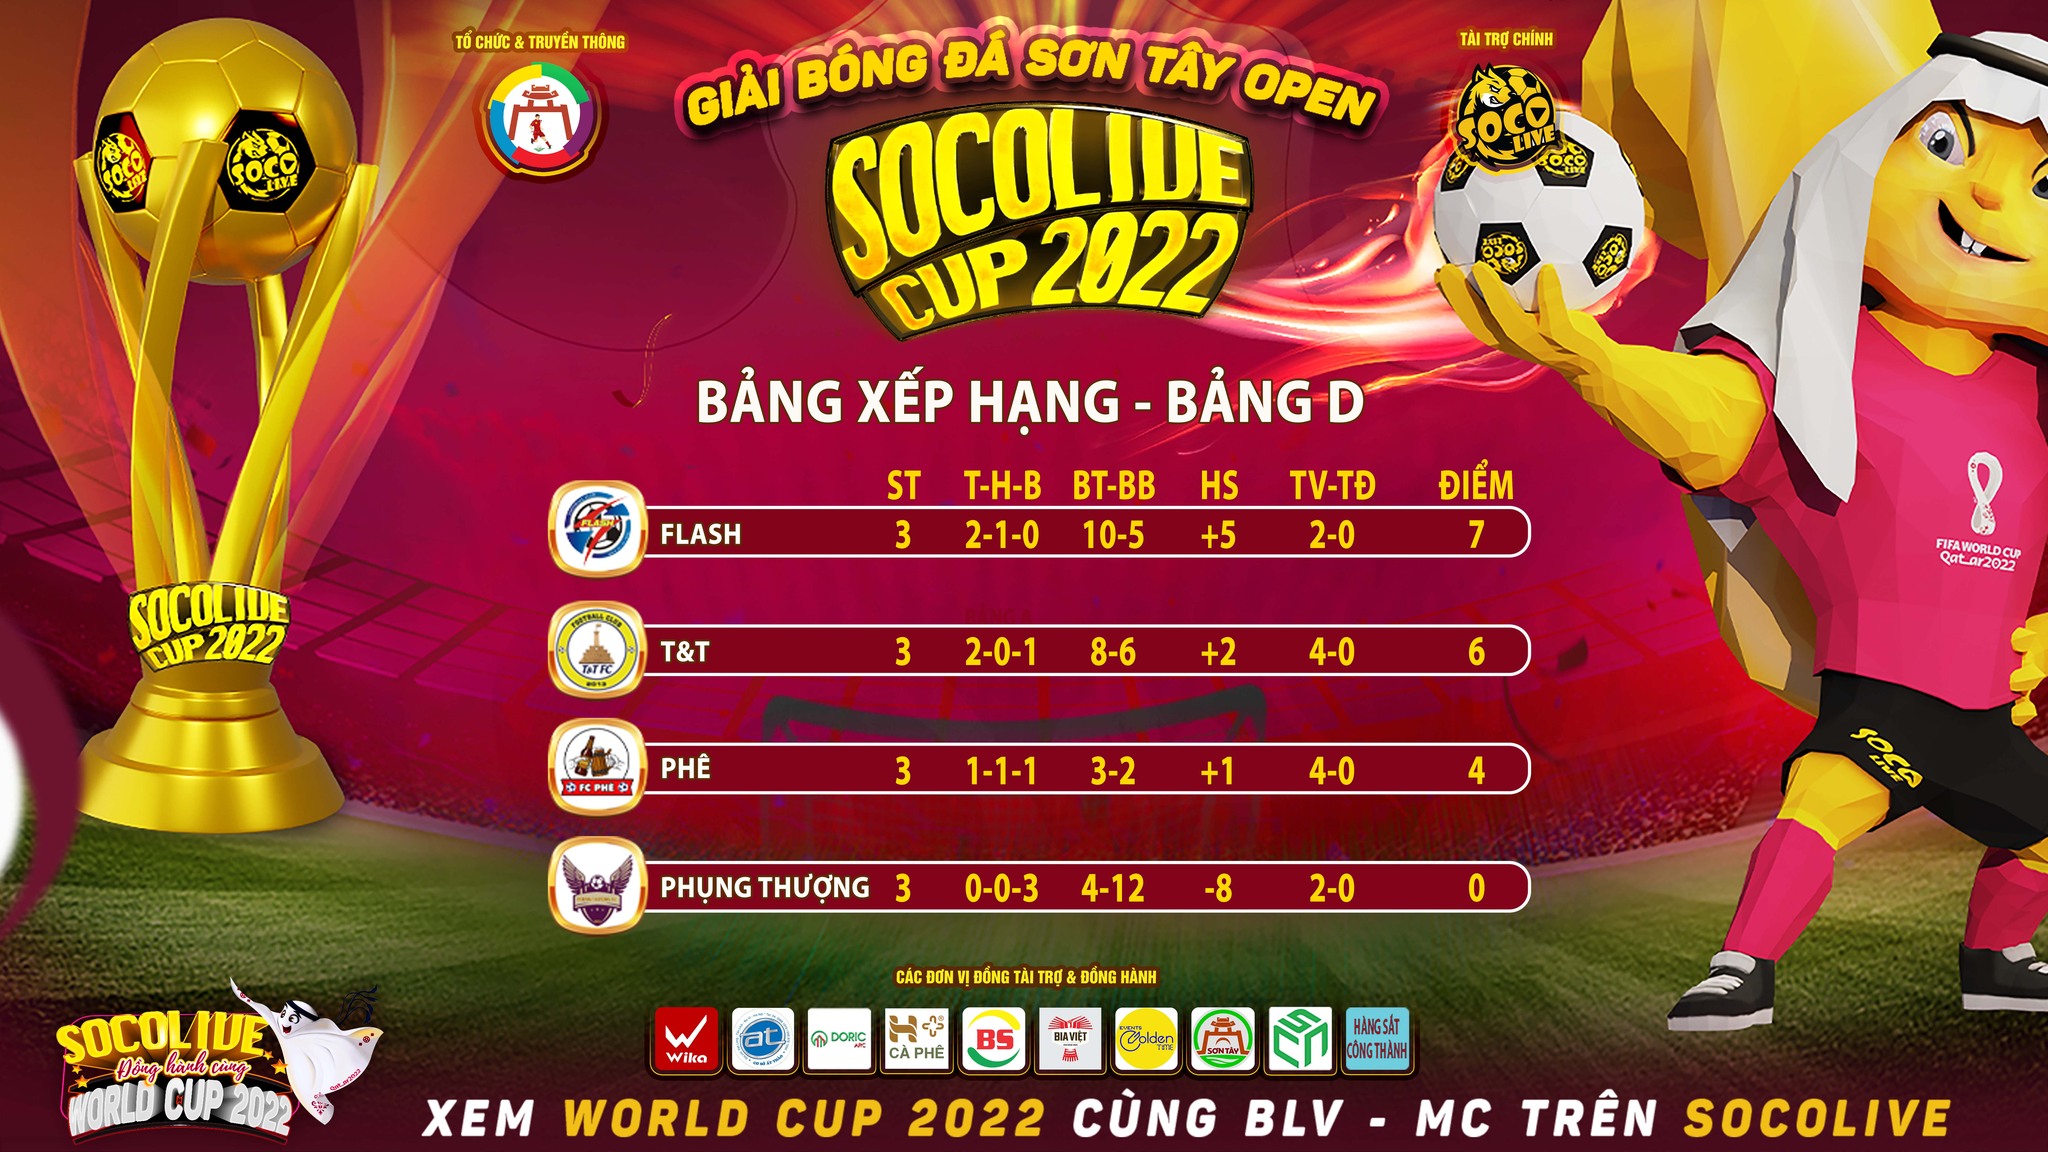 Xếp hạng Bảng D Giải Bóng Đá Sân 7 Sơn Tây Open Socolive Cup 2022